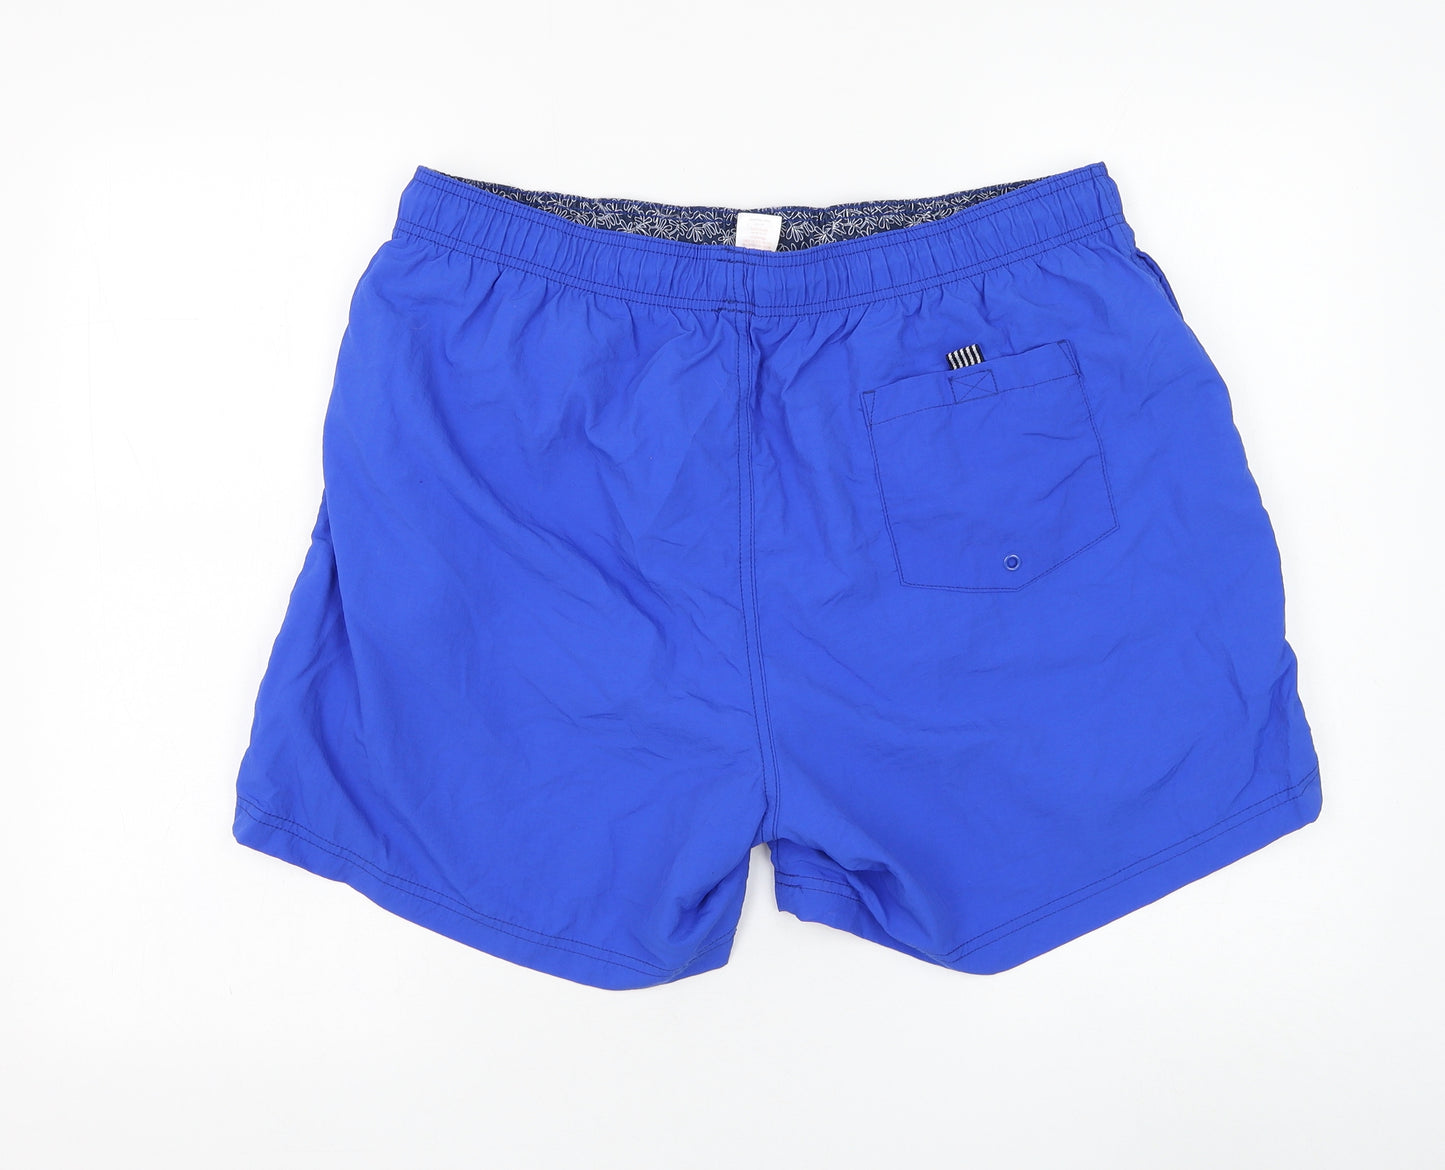 F&F Mens Blue Nylon Sweat Shorts Size XL L6 in Regular Drawstring - Swimwear